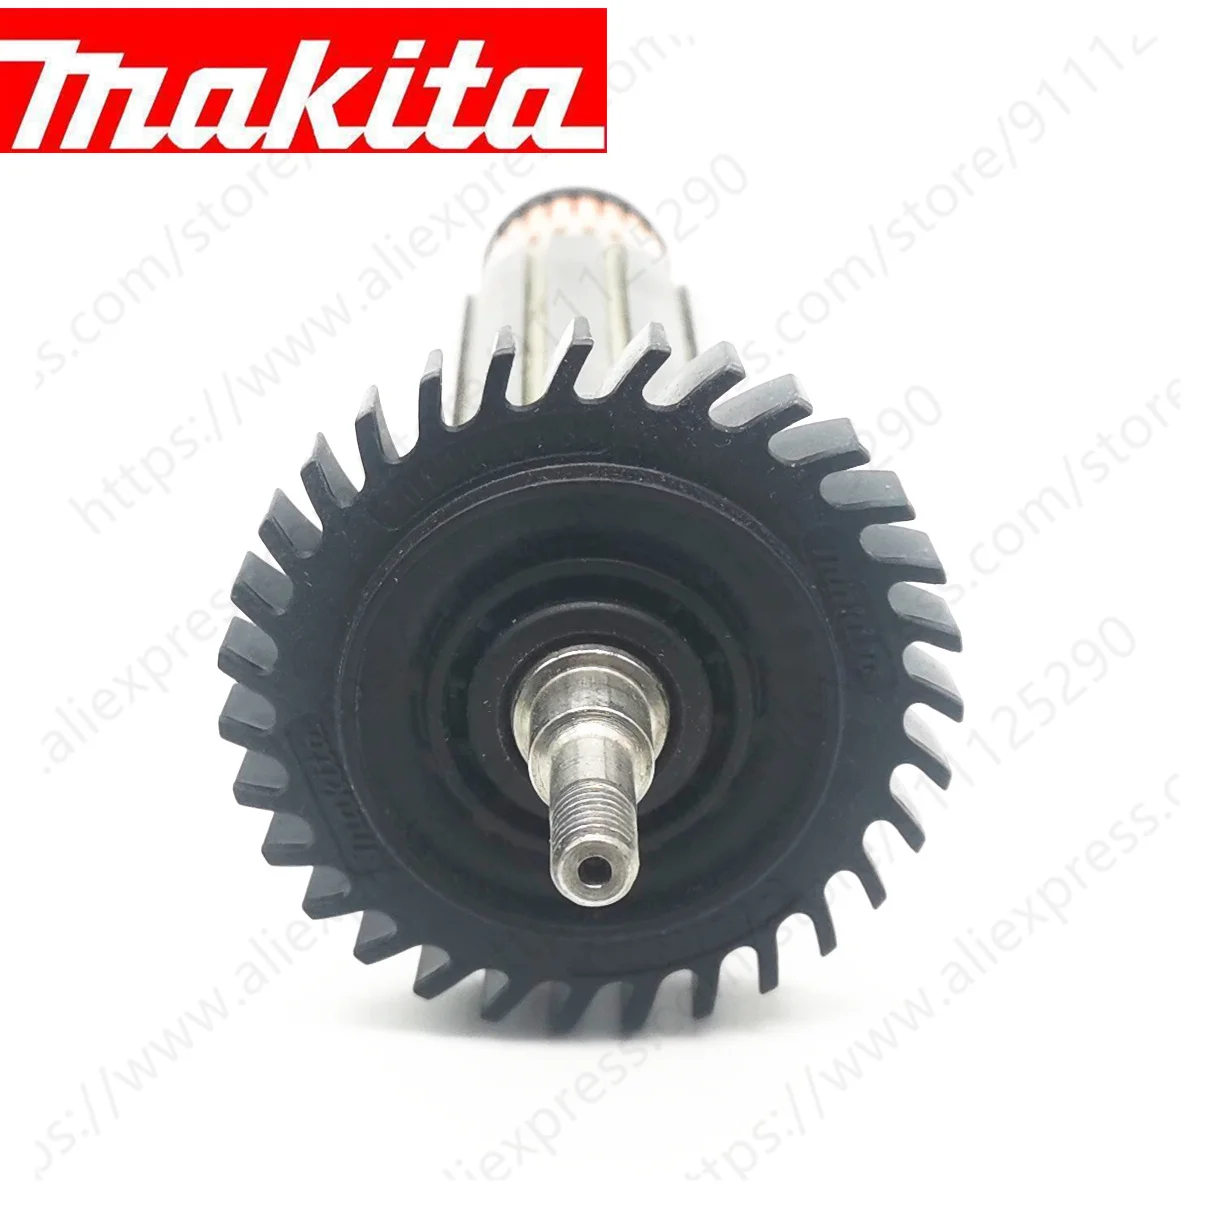 Armature Rotor za Makita GA4030 GA5030 GA4530 GA4034 GA5034 GA4534 GA4031 PJ7000 GA4030R 510140-1